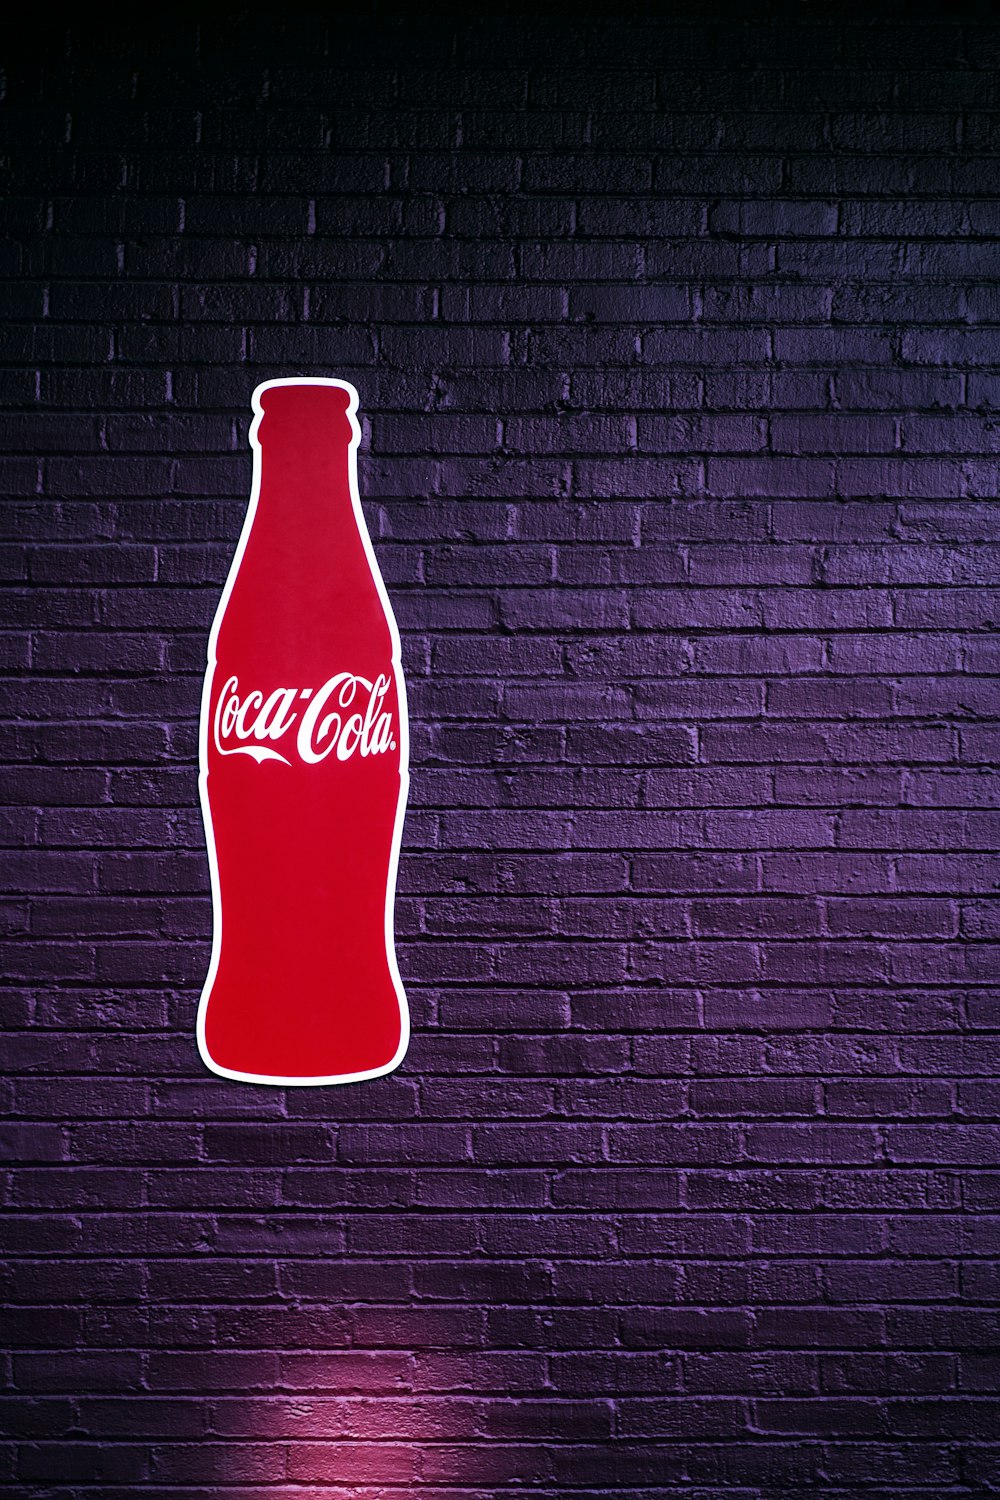 garrafa de coca-cola vermelha na parede listrada preta e branca